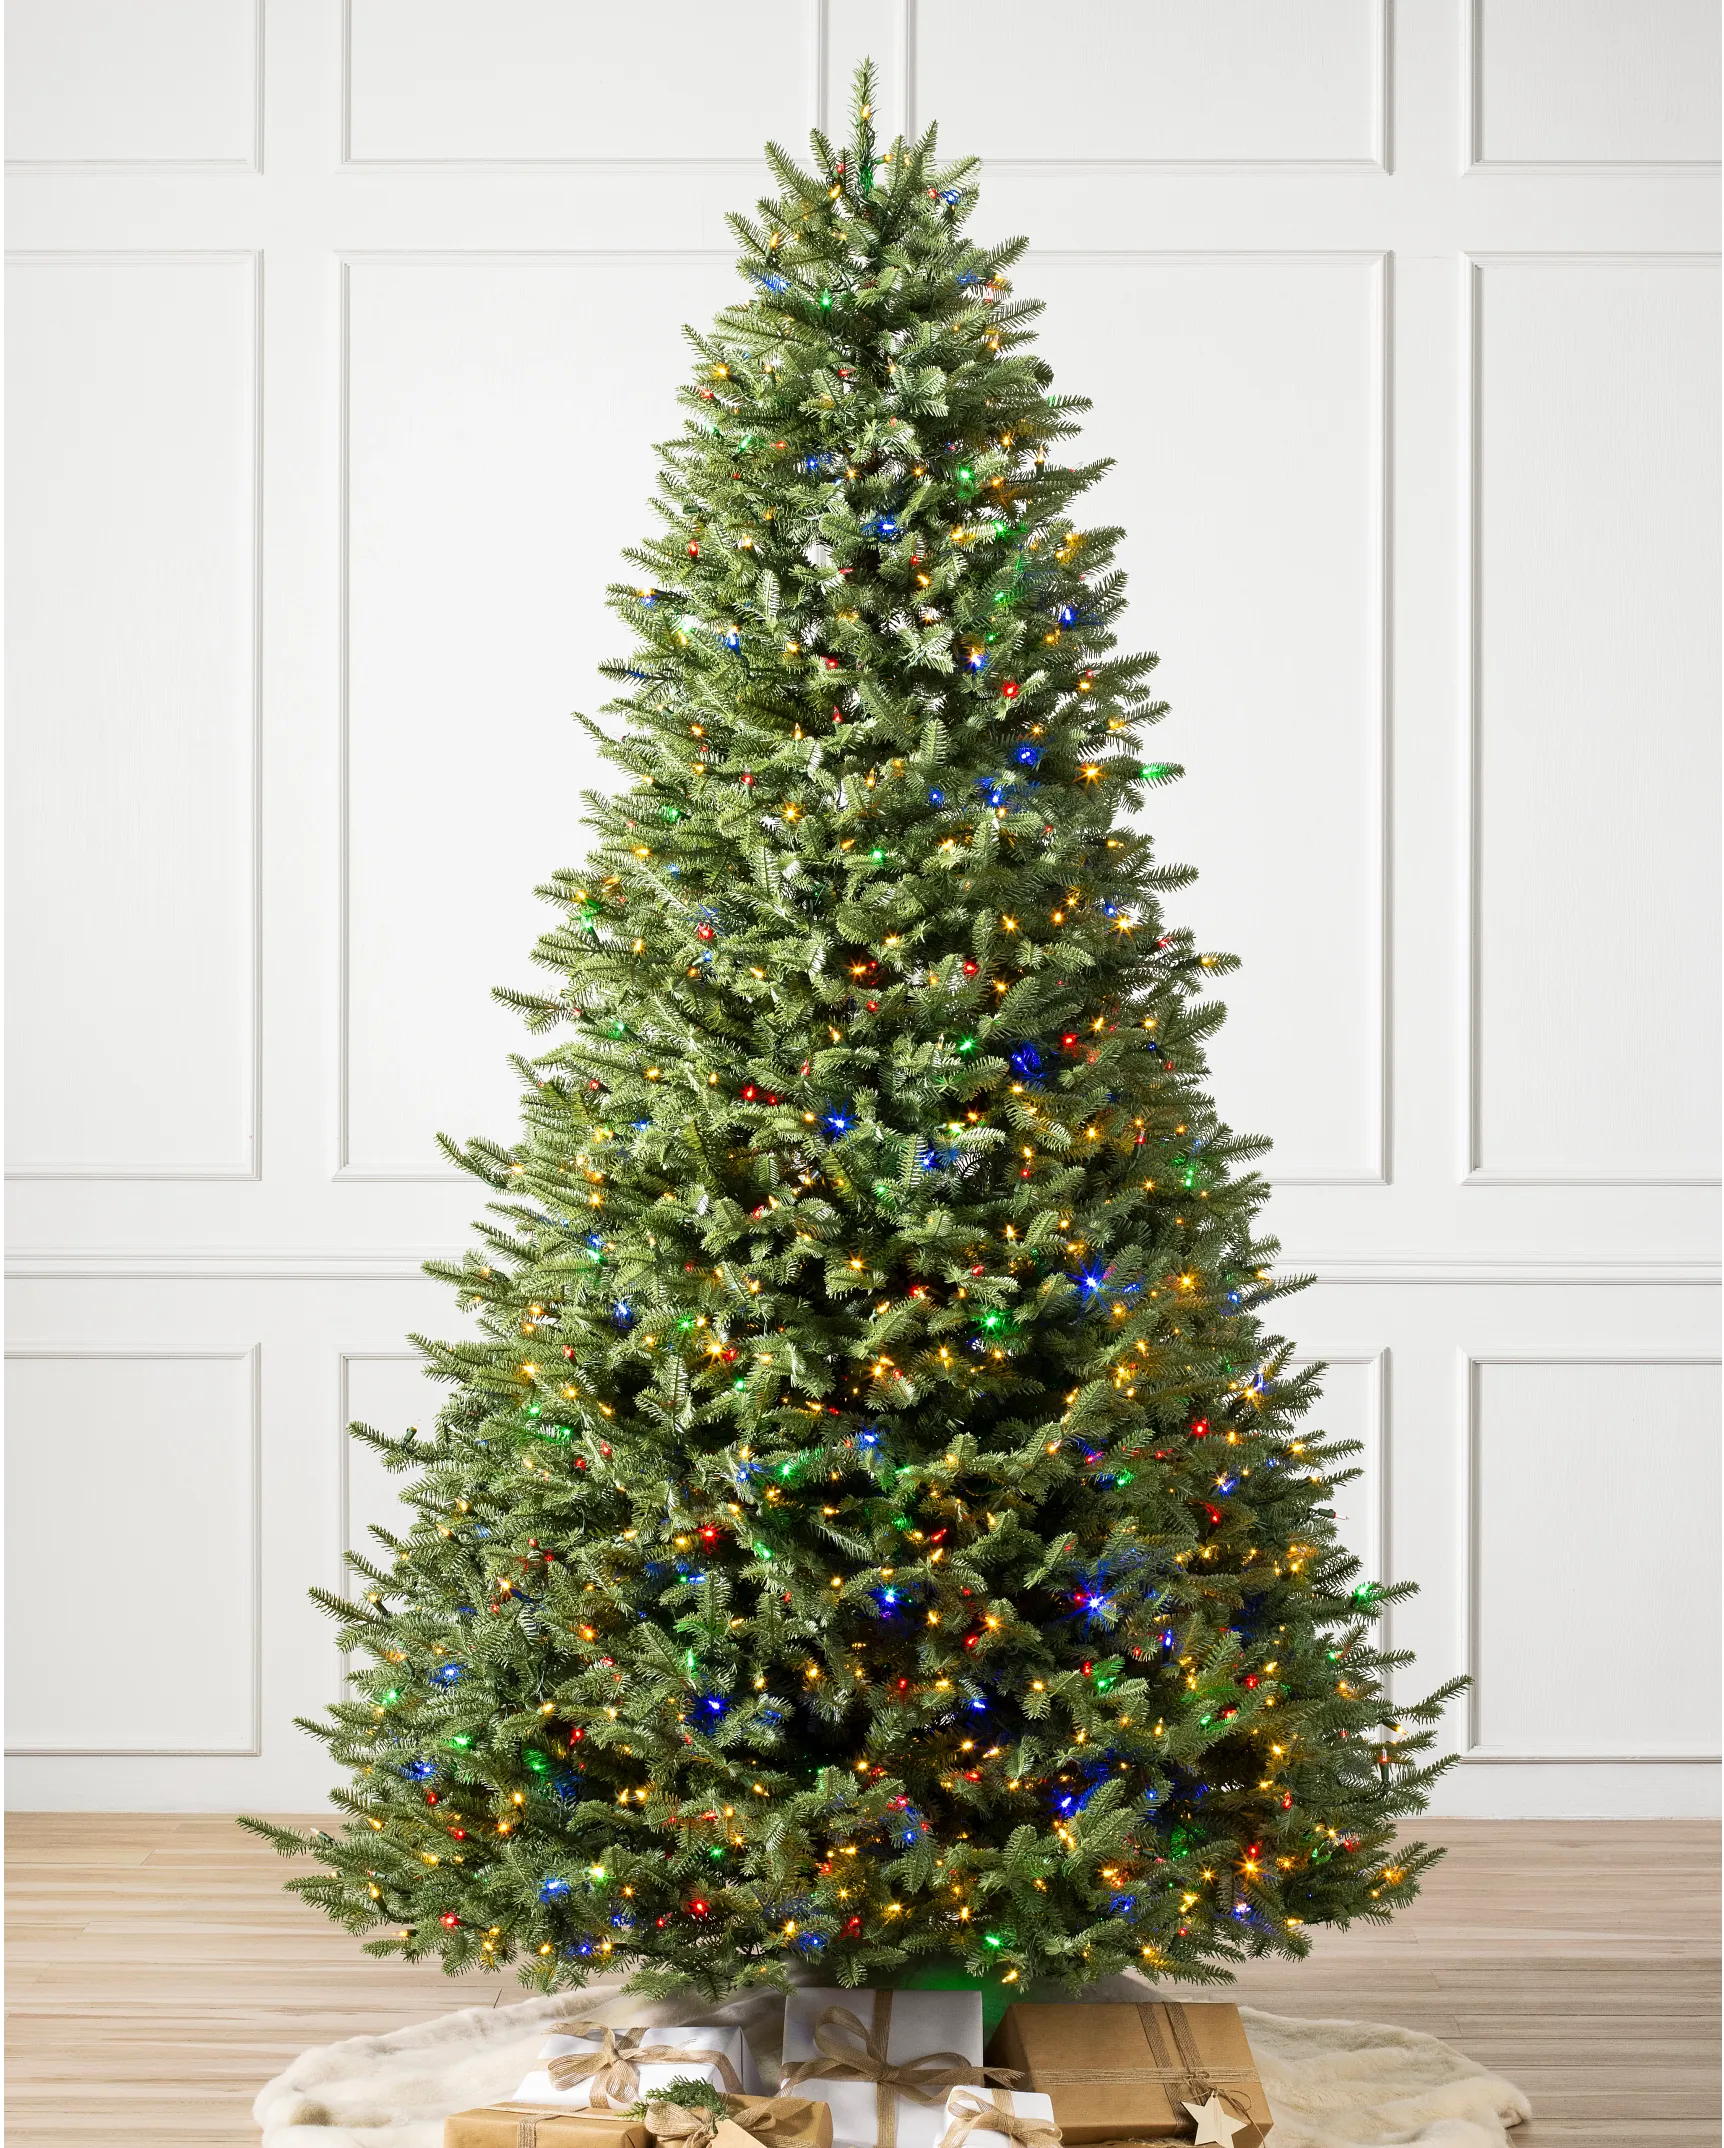 https://source.widen.net/content/chhldale52/webp/Balsam-Fir-Flip-Artificial-Christmas-Tree_LEDCPLUSC_SSC.webp?position=c&color=ffffffff&quality=80&u=7mzq6p&w=862&h=1074&retina=true